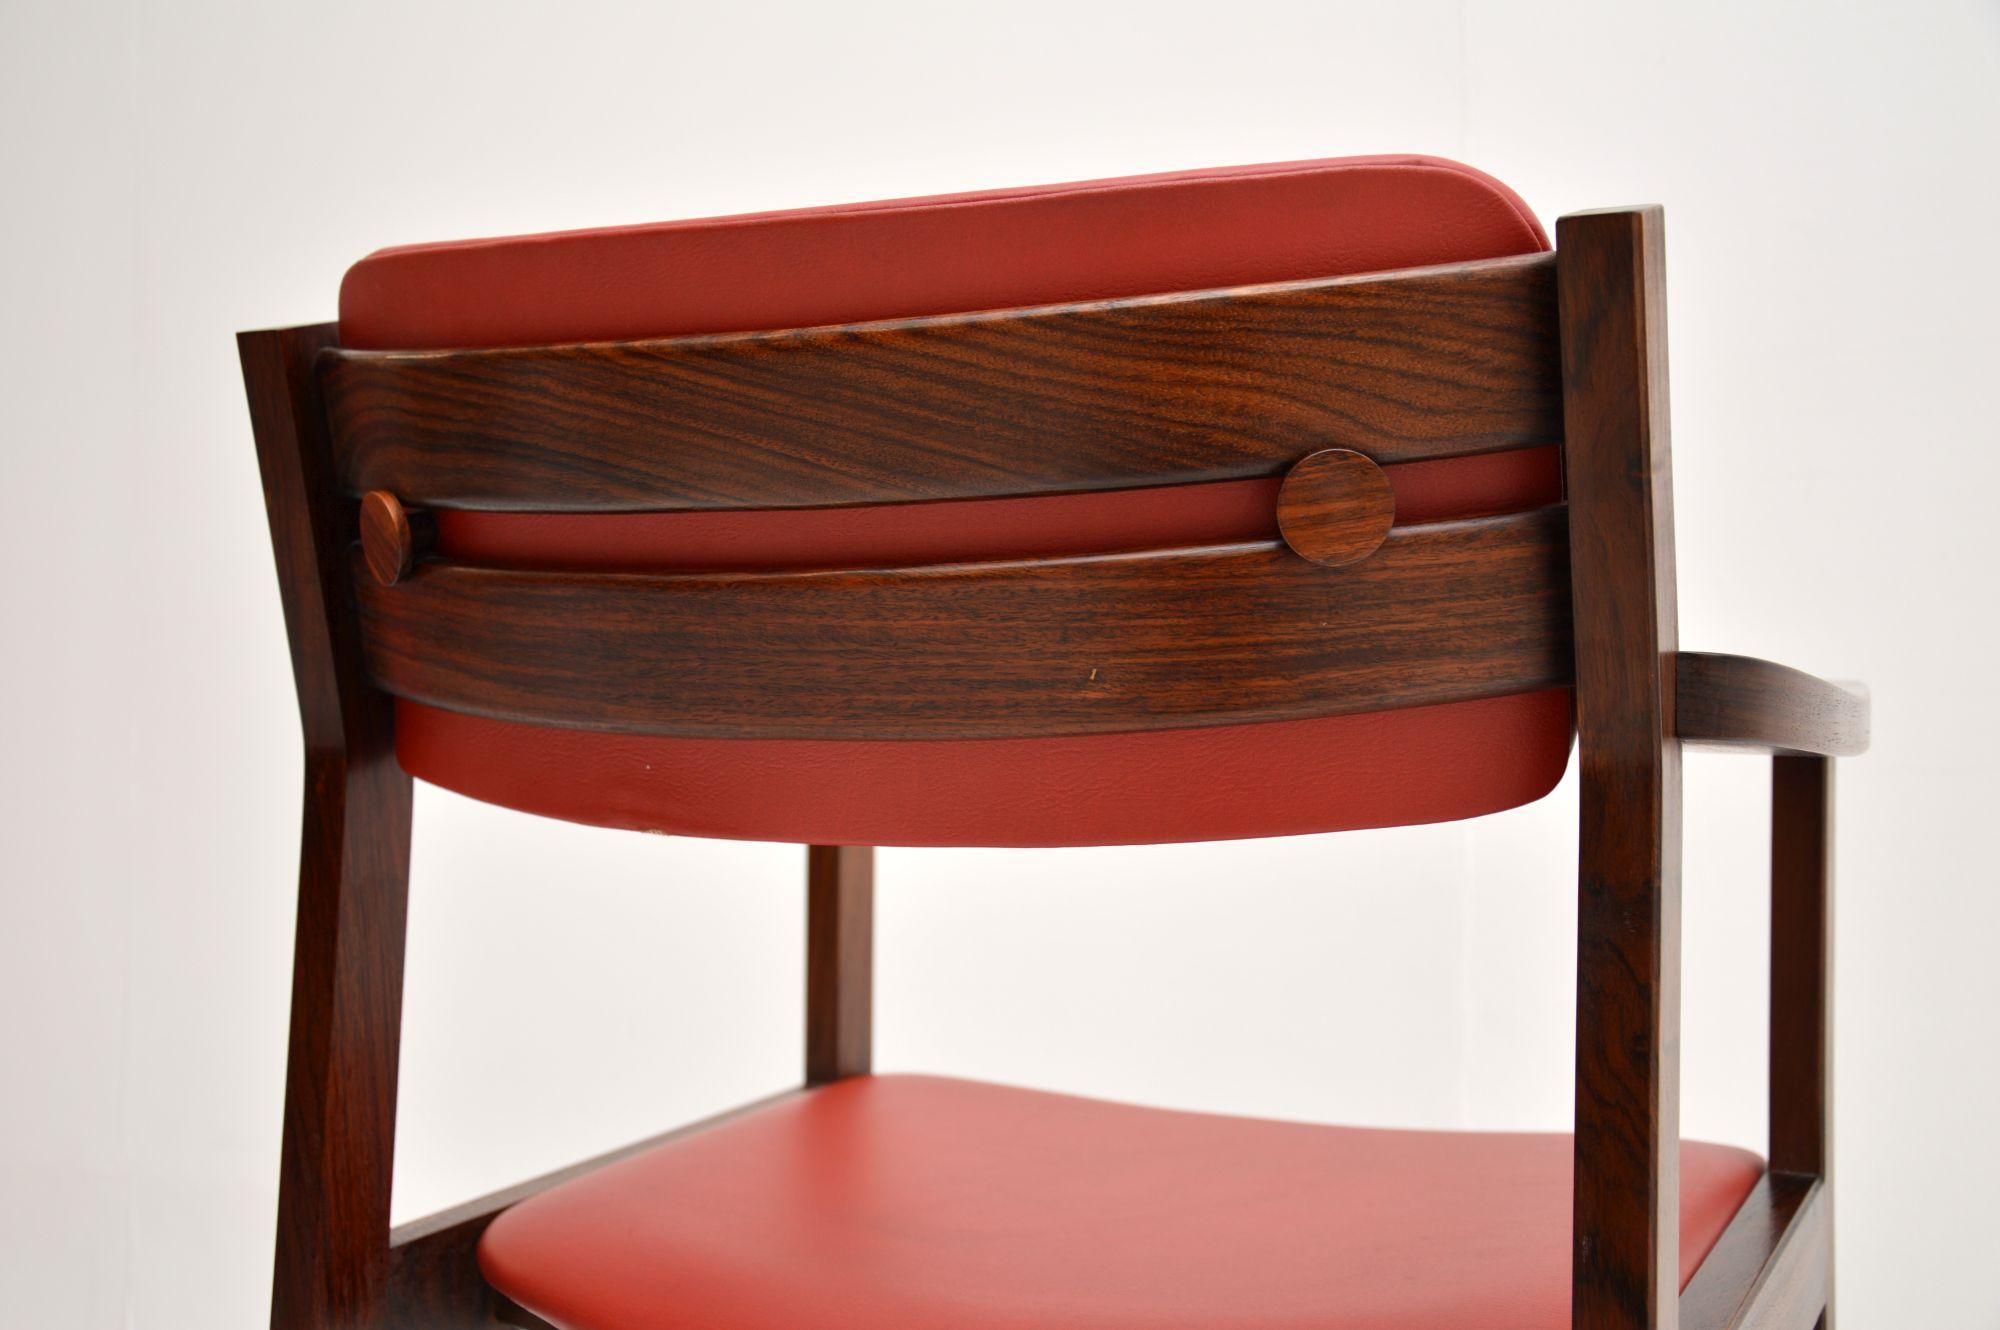 Ein sehr stilvoller und extrem gut gemachter dänischer Vintage-Sessel / Schreibtischstuhl. Es wurde kürzlich aus Dänemark importiert und stammt aus den 1960-70er Jahren.

Er ist von hervorragender Qualität, schön gestaltet und bequem. Er hat die